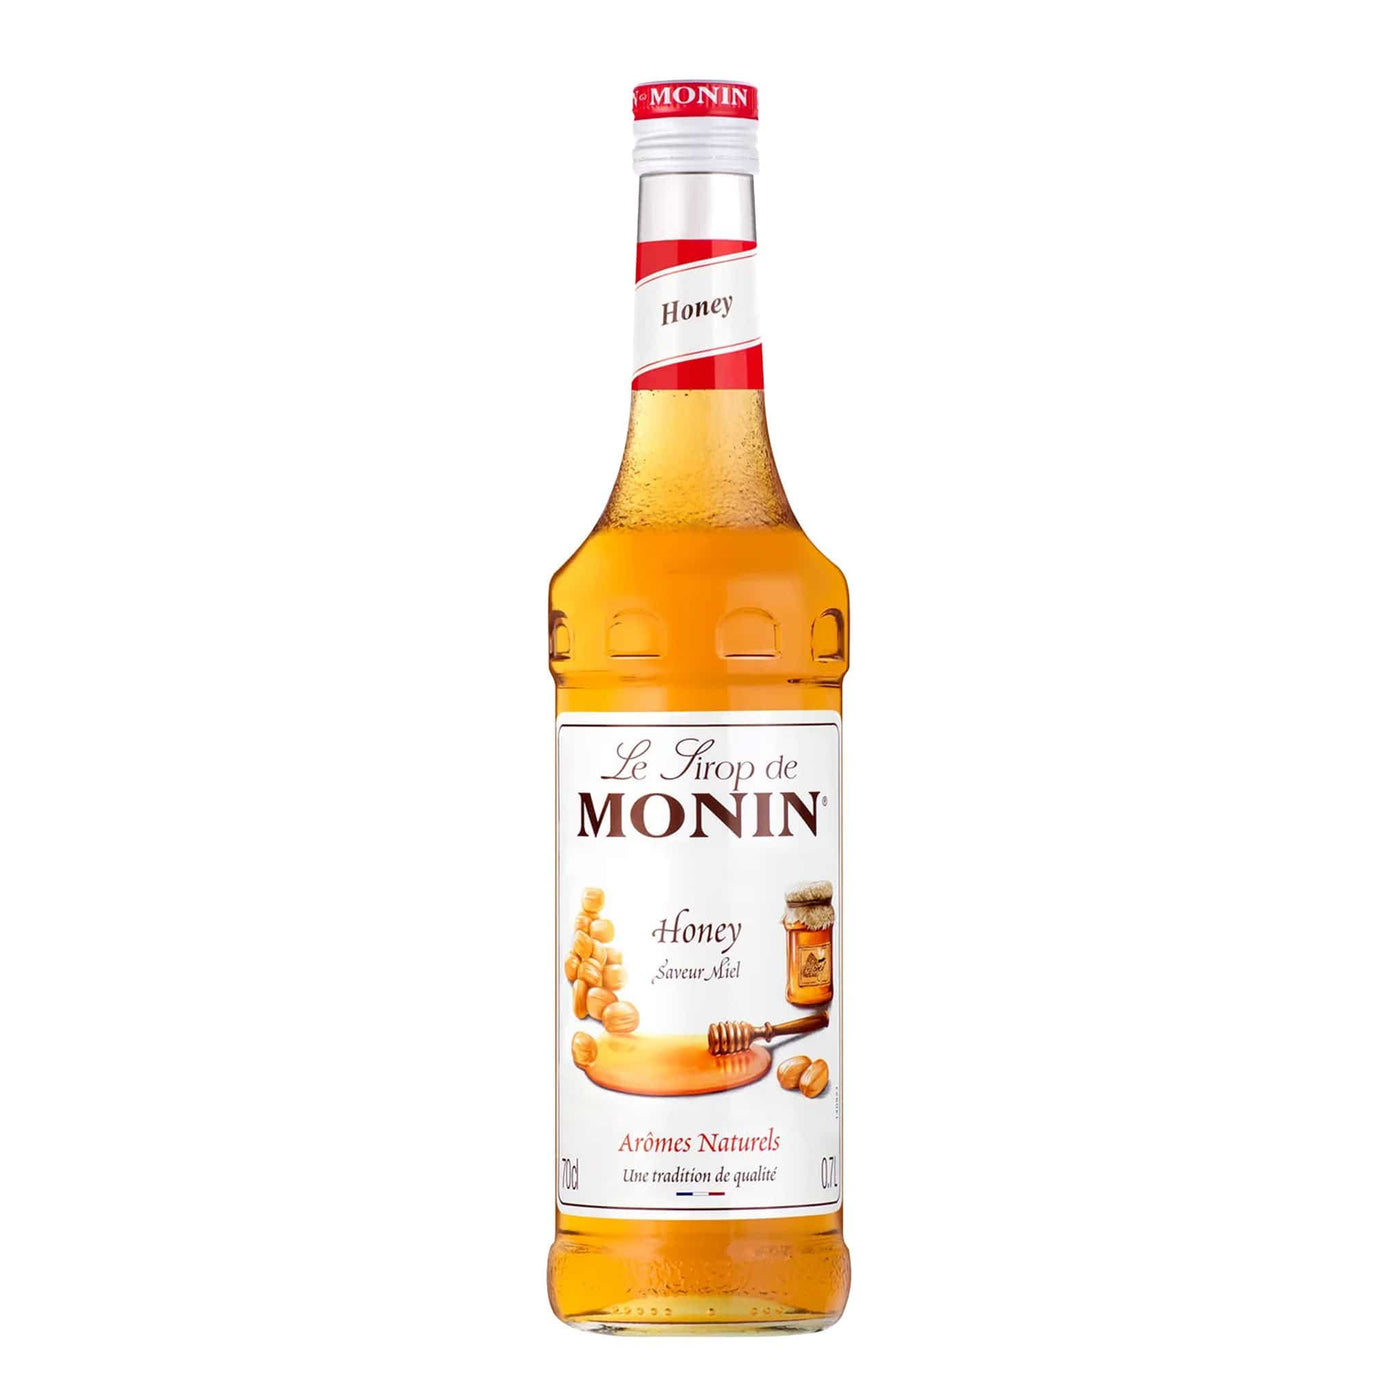 Monin Honey Syrup